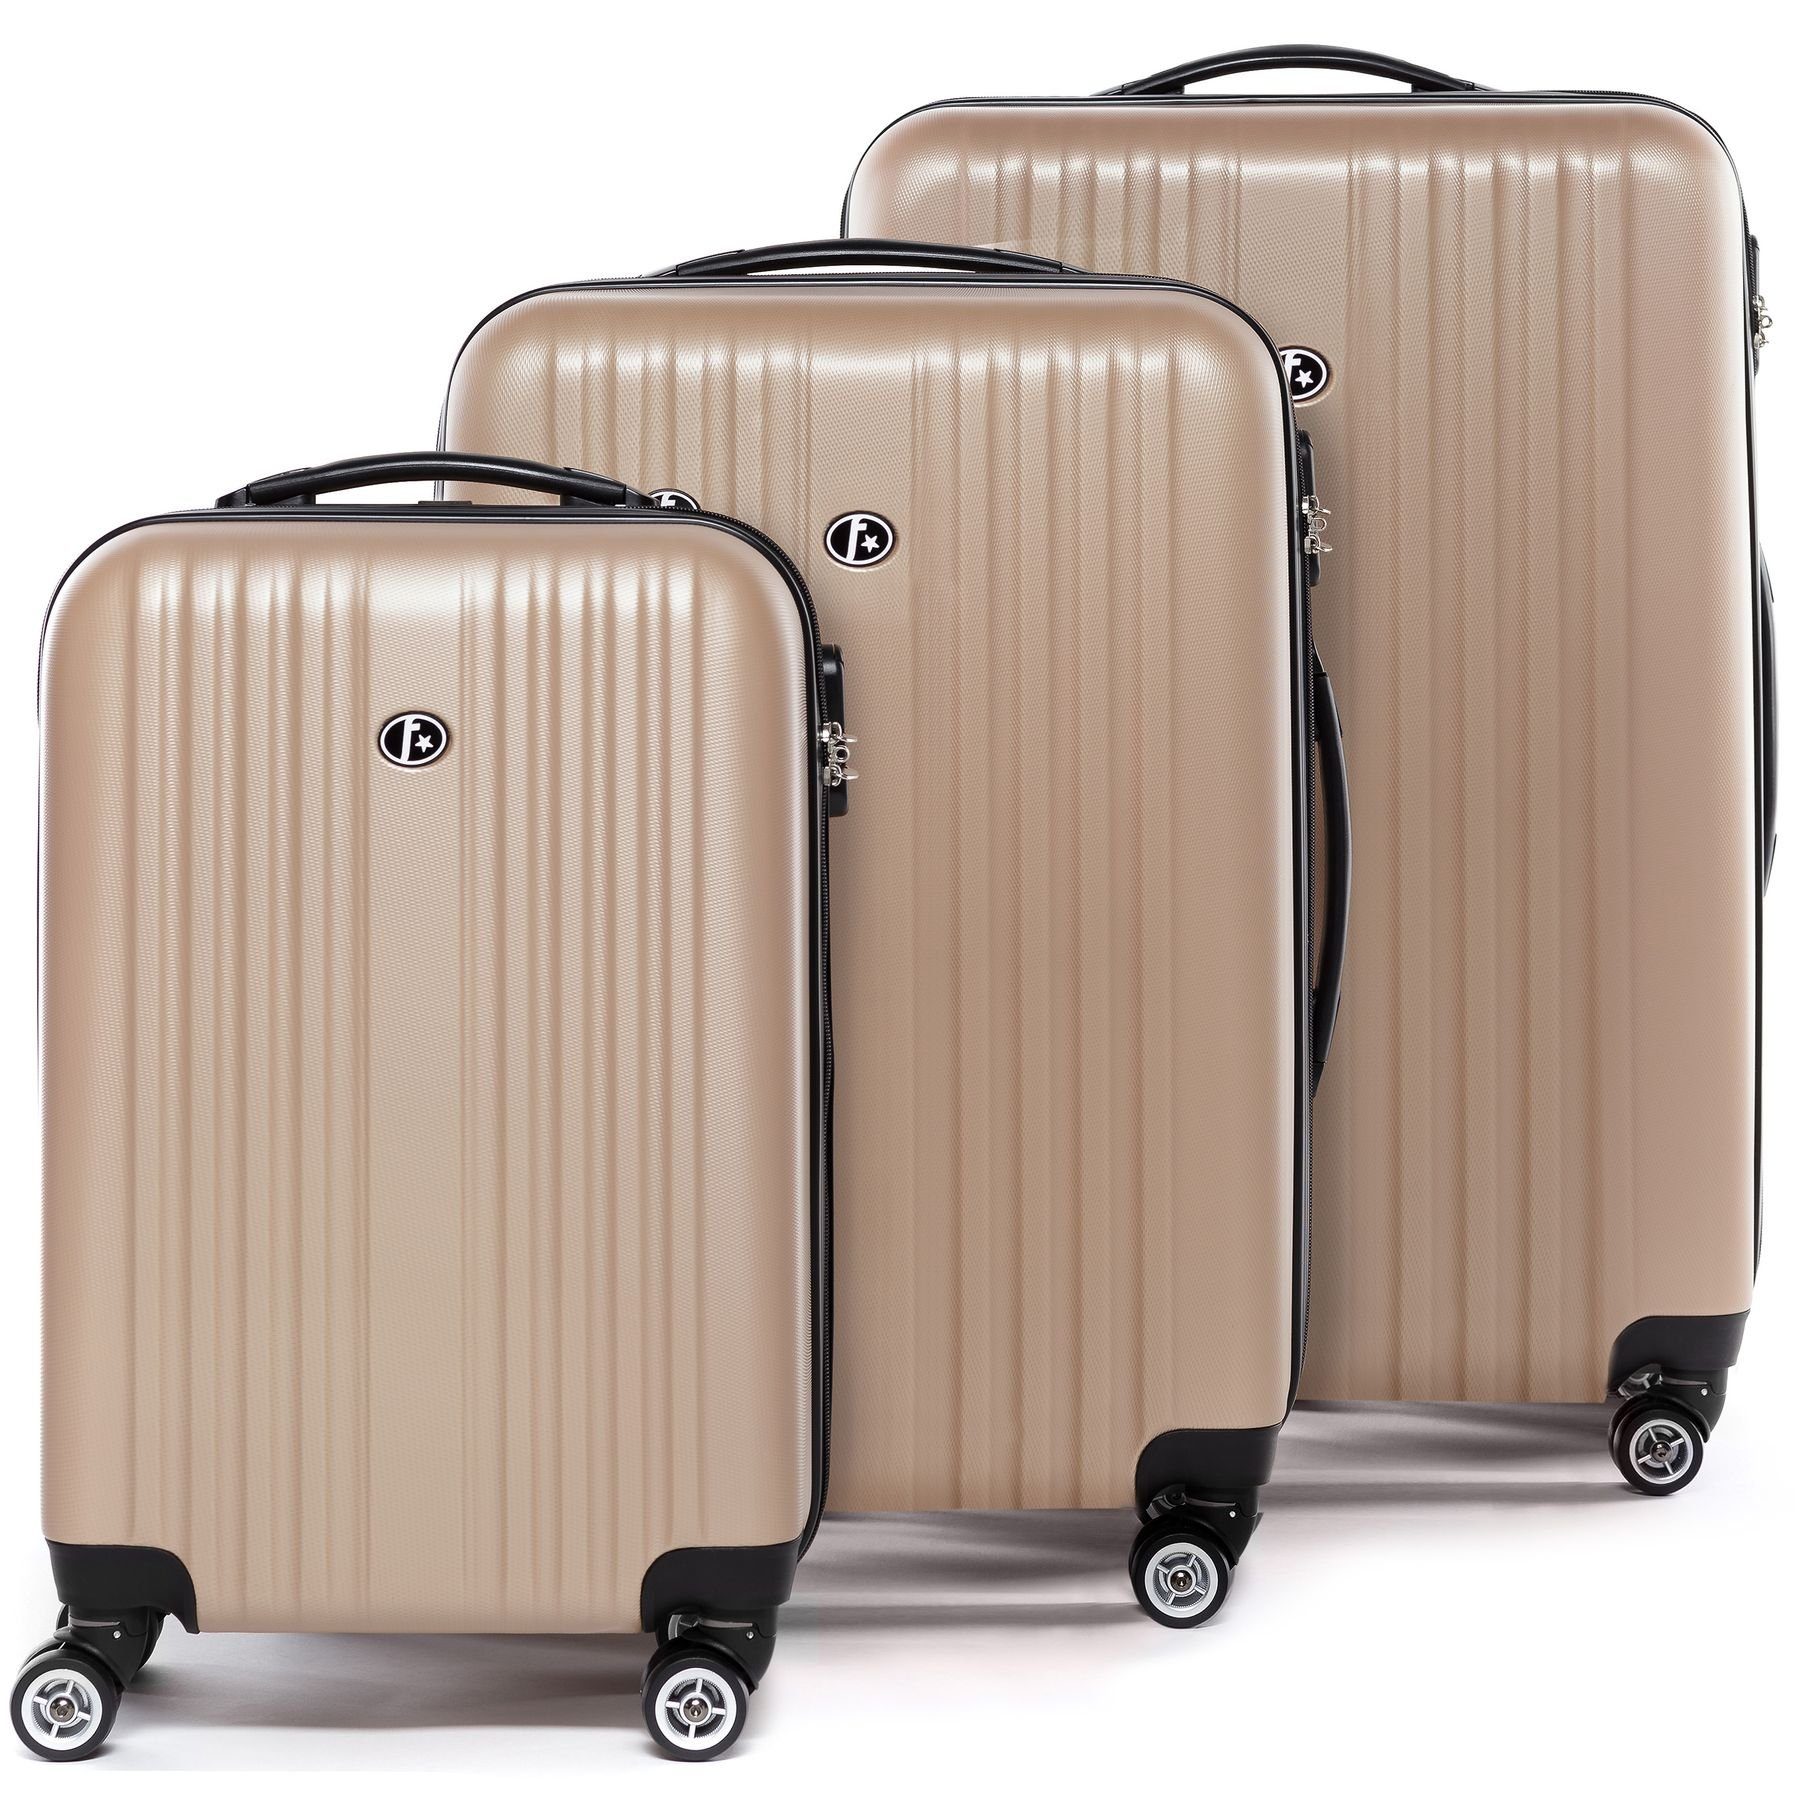 FERGÉ Kofferset 3 teilig Hartschale Toulouse, Trolley 3er Koffer Set,  Reisekoffer 4 Rollen, Premium Rollkoffer, Platzsparend: Koffer sind mühelos  ineinander stapelbar